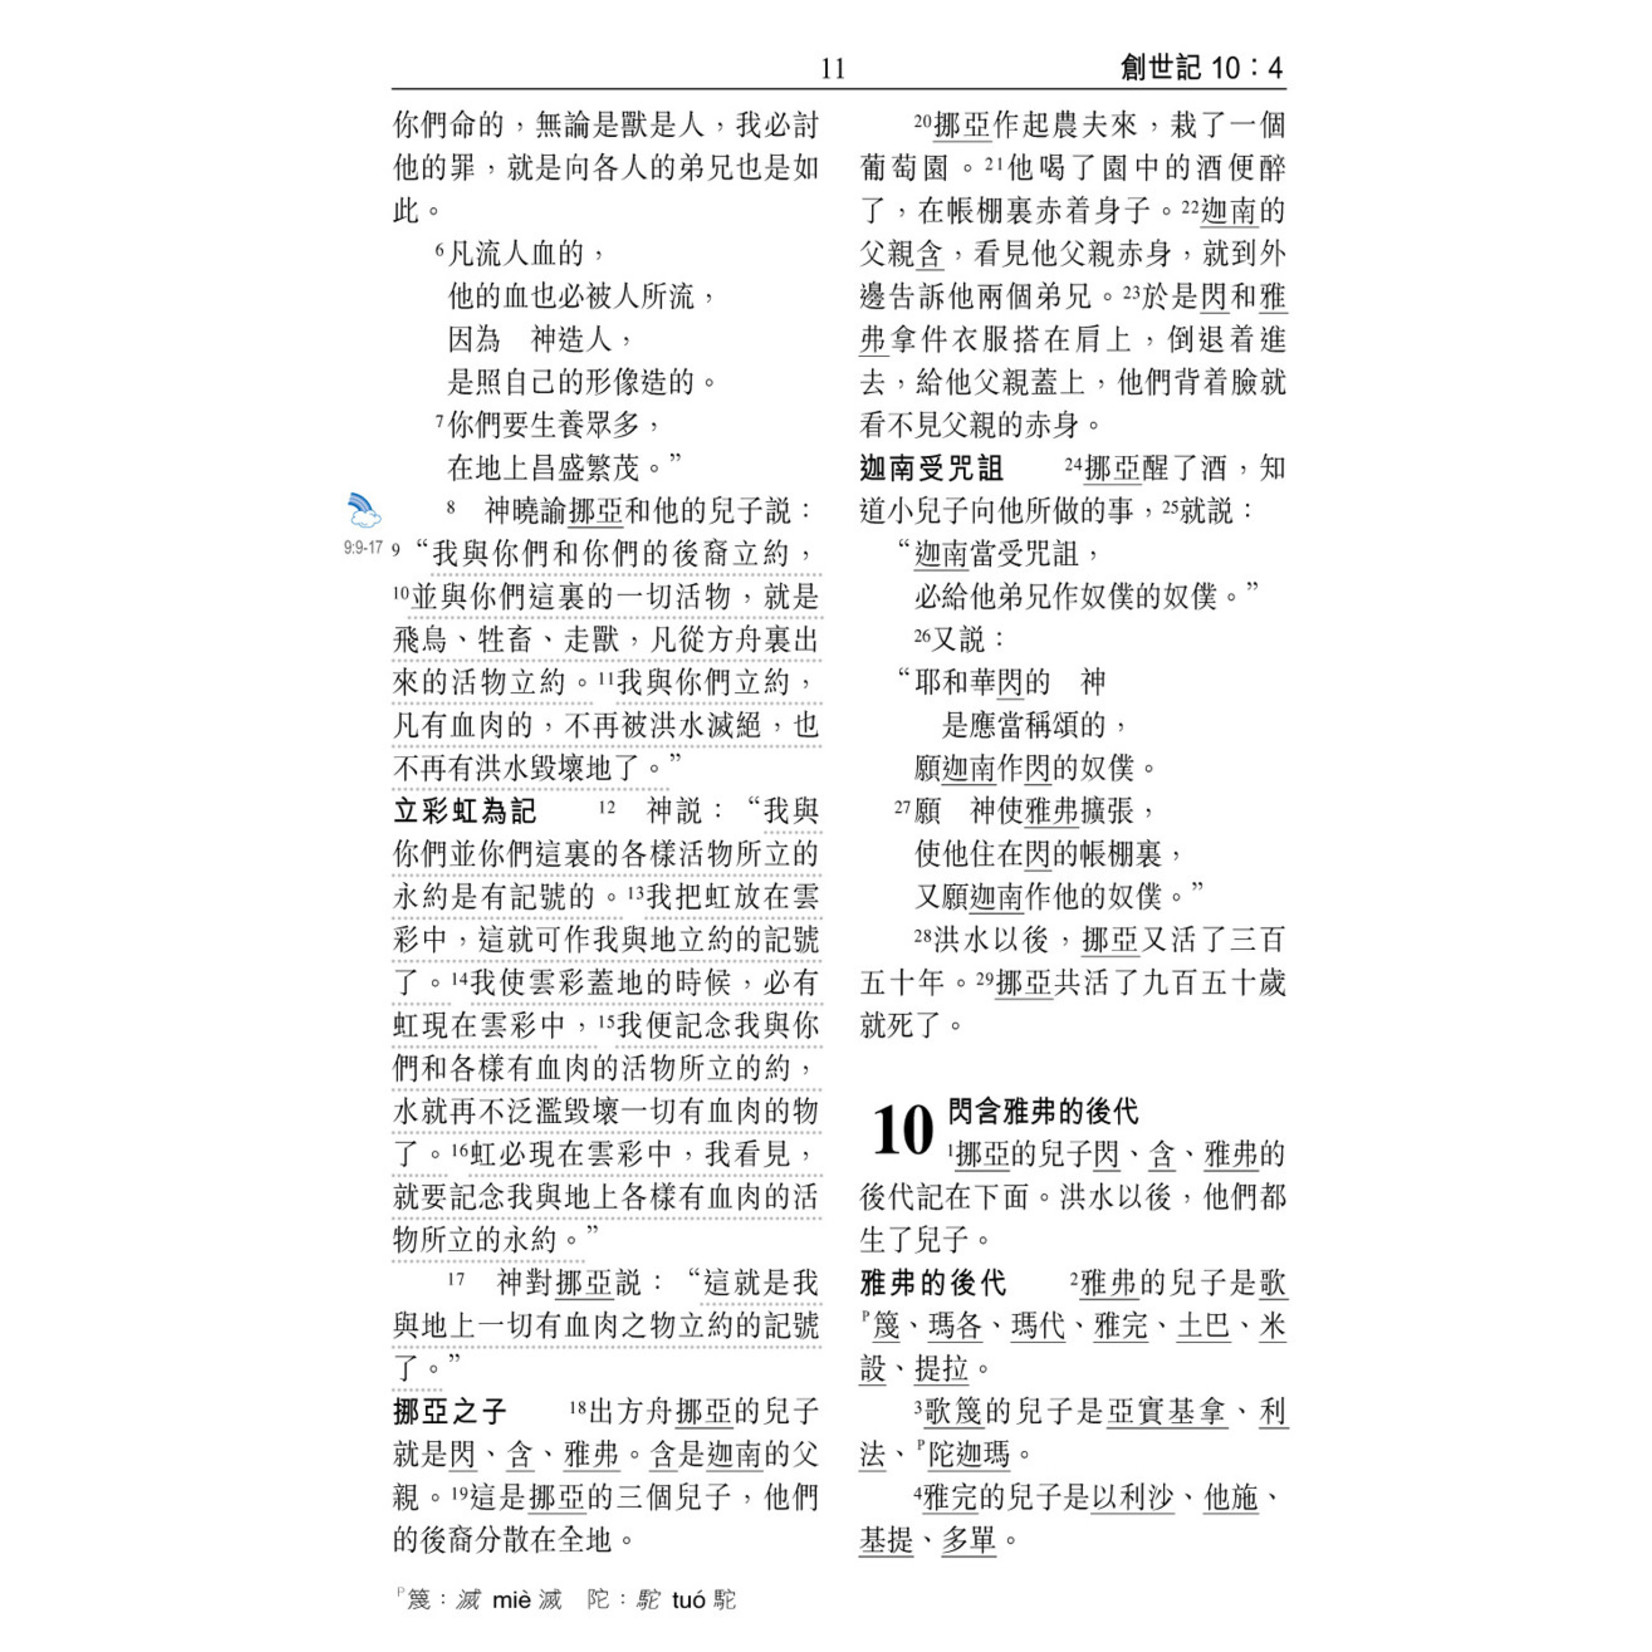 漢語聖經協會 Chinese Bible International 聖經．和合本．祈禱應許版．拇指版．藍色仿皮面銀邊拉鏈